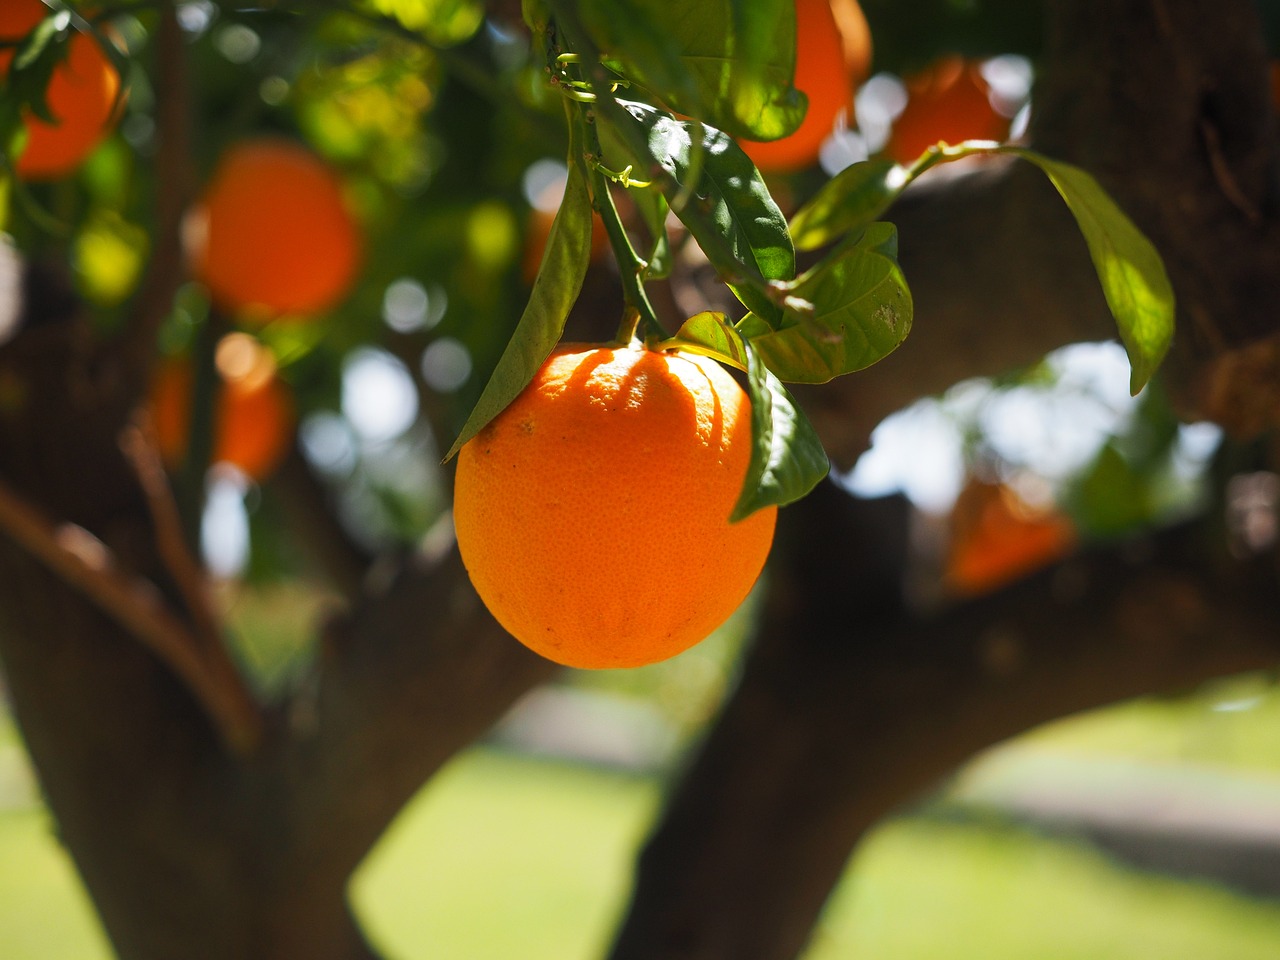 Orange am Baum in der Sonne